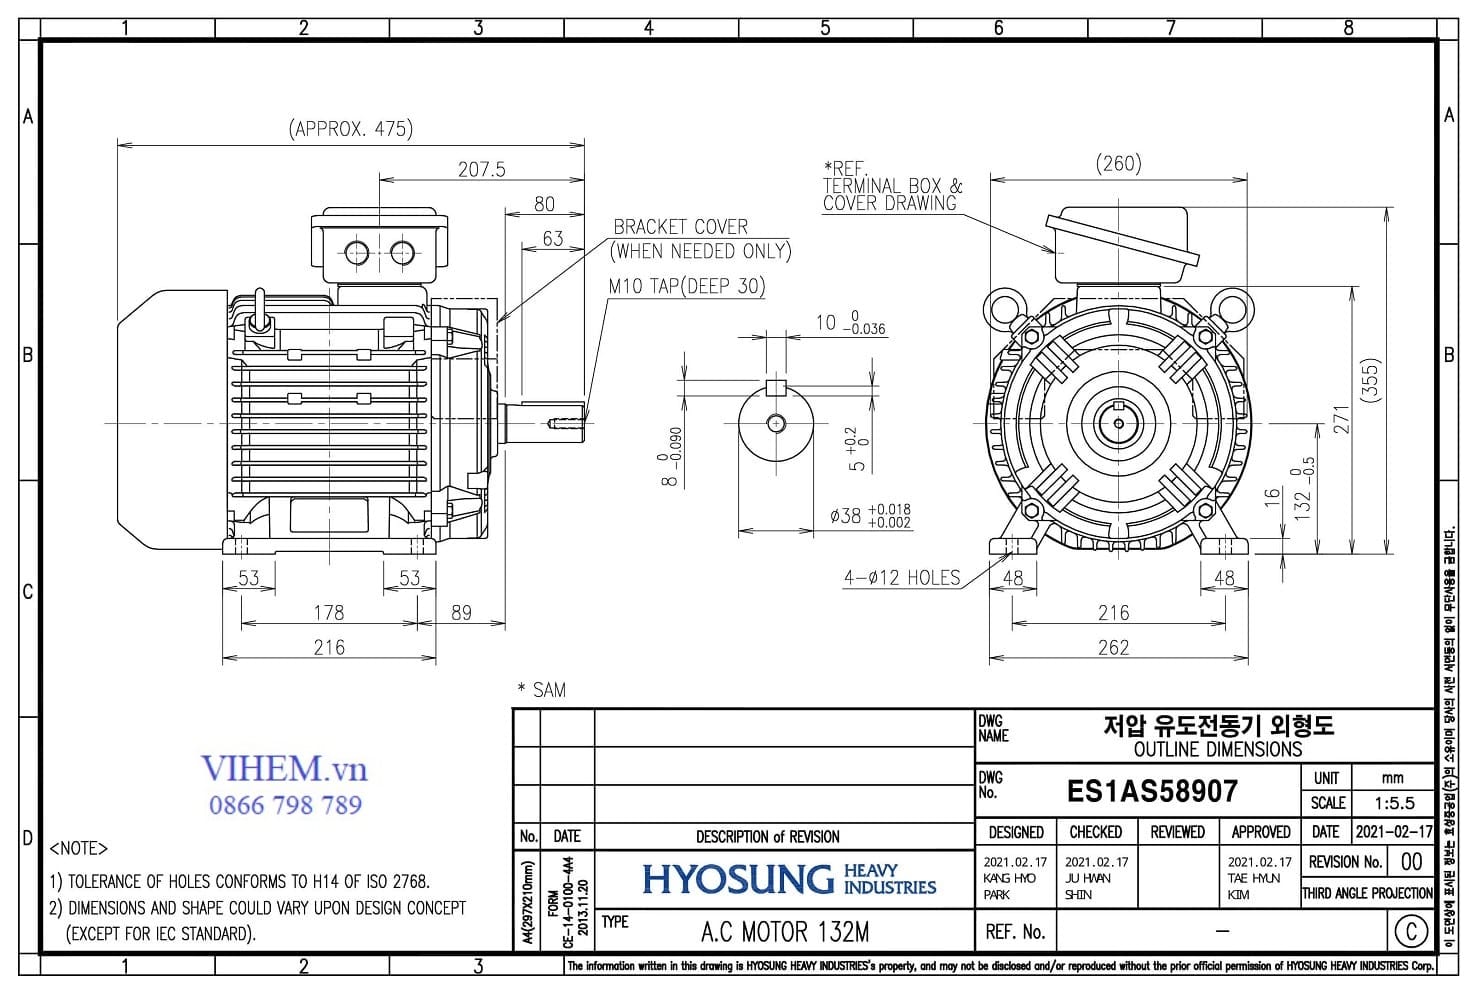 Thông số kỹ thuật & kích thước lắp đặt Motor Hyosung 7.5kW - 4P (1500 rpm)